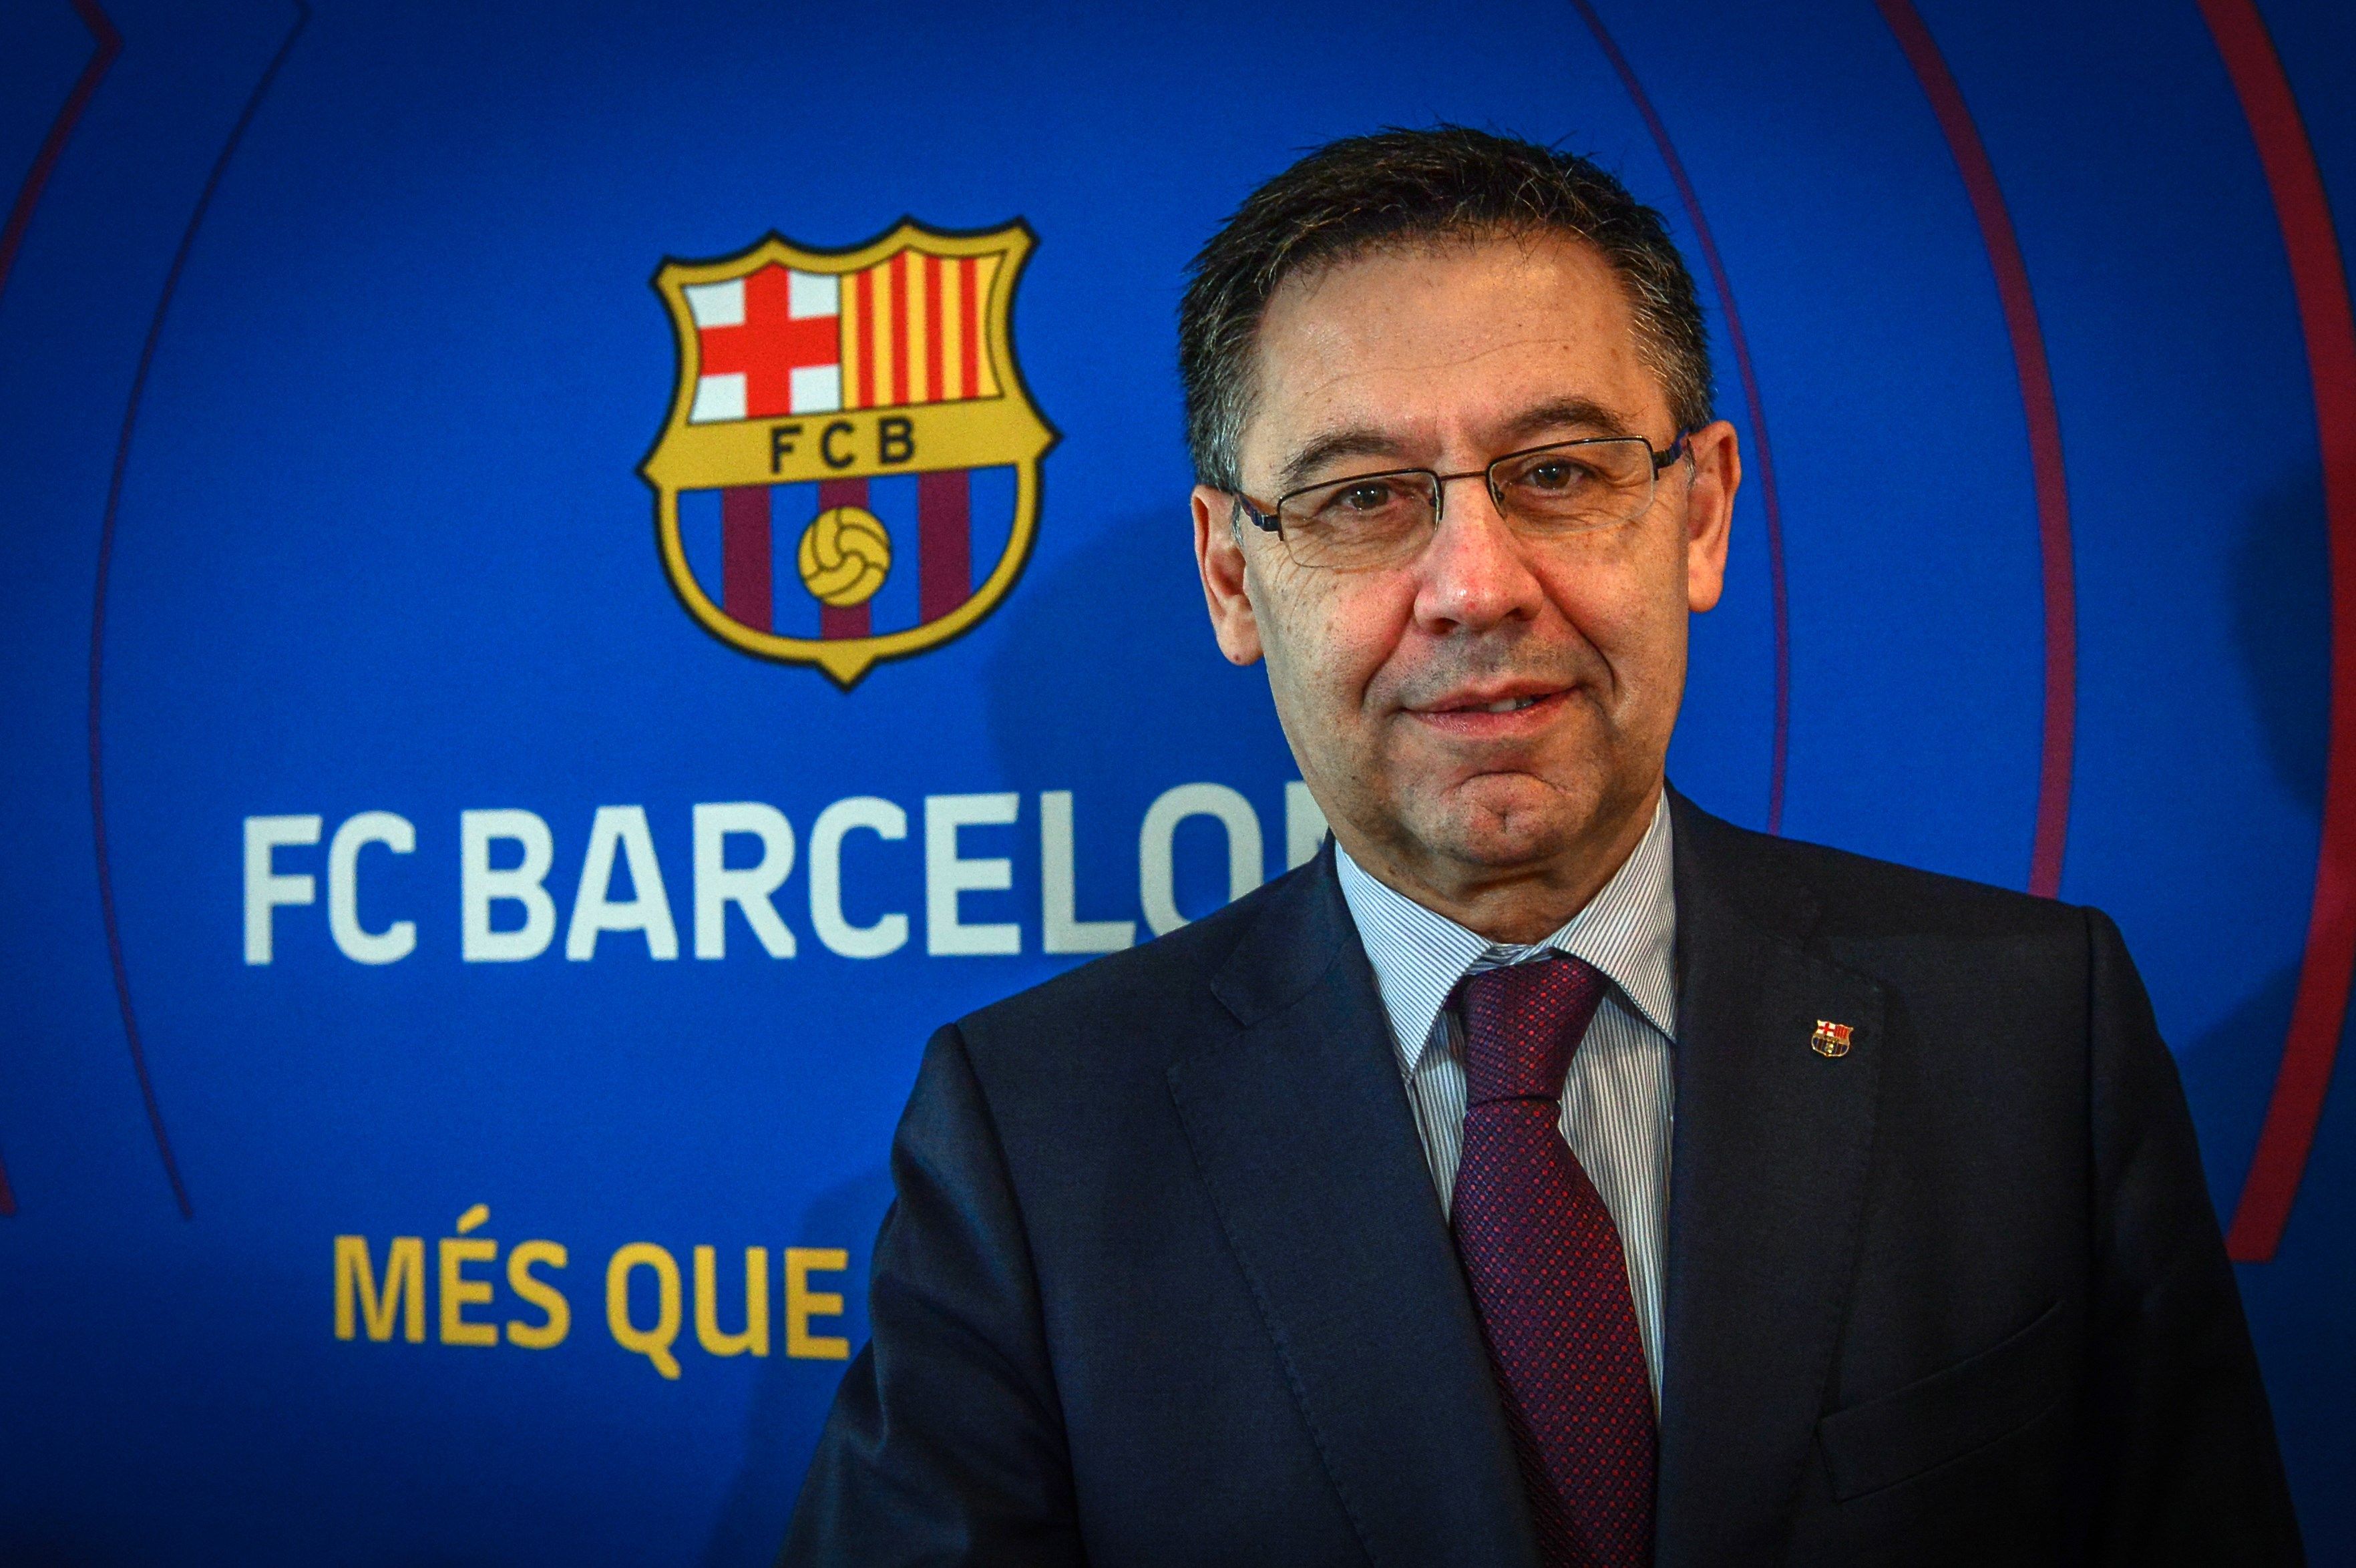 El presidente del FC Barcelona, Josep María Bartomeu, asegura que no hay nada concreto con Griezmann, Vidal ni Neymar. (Foto Prensa Libre: EFE)